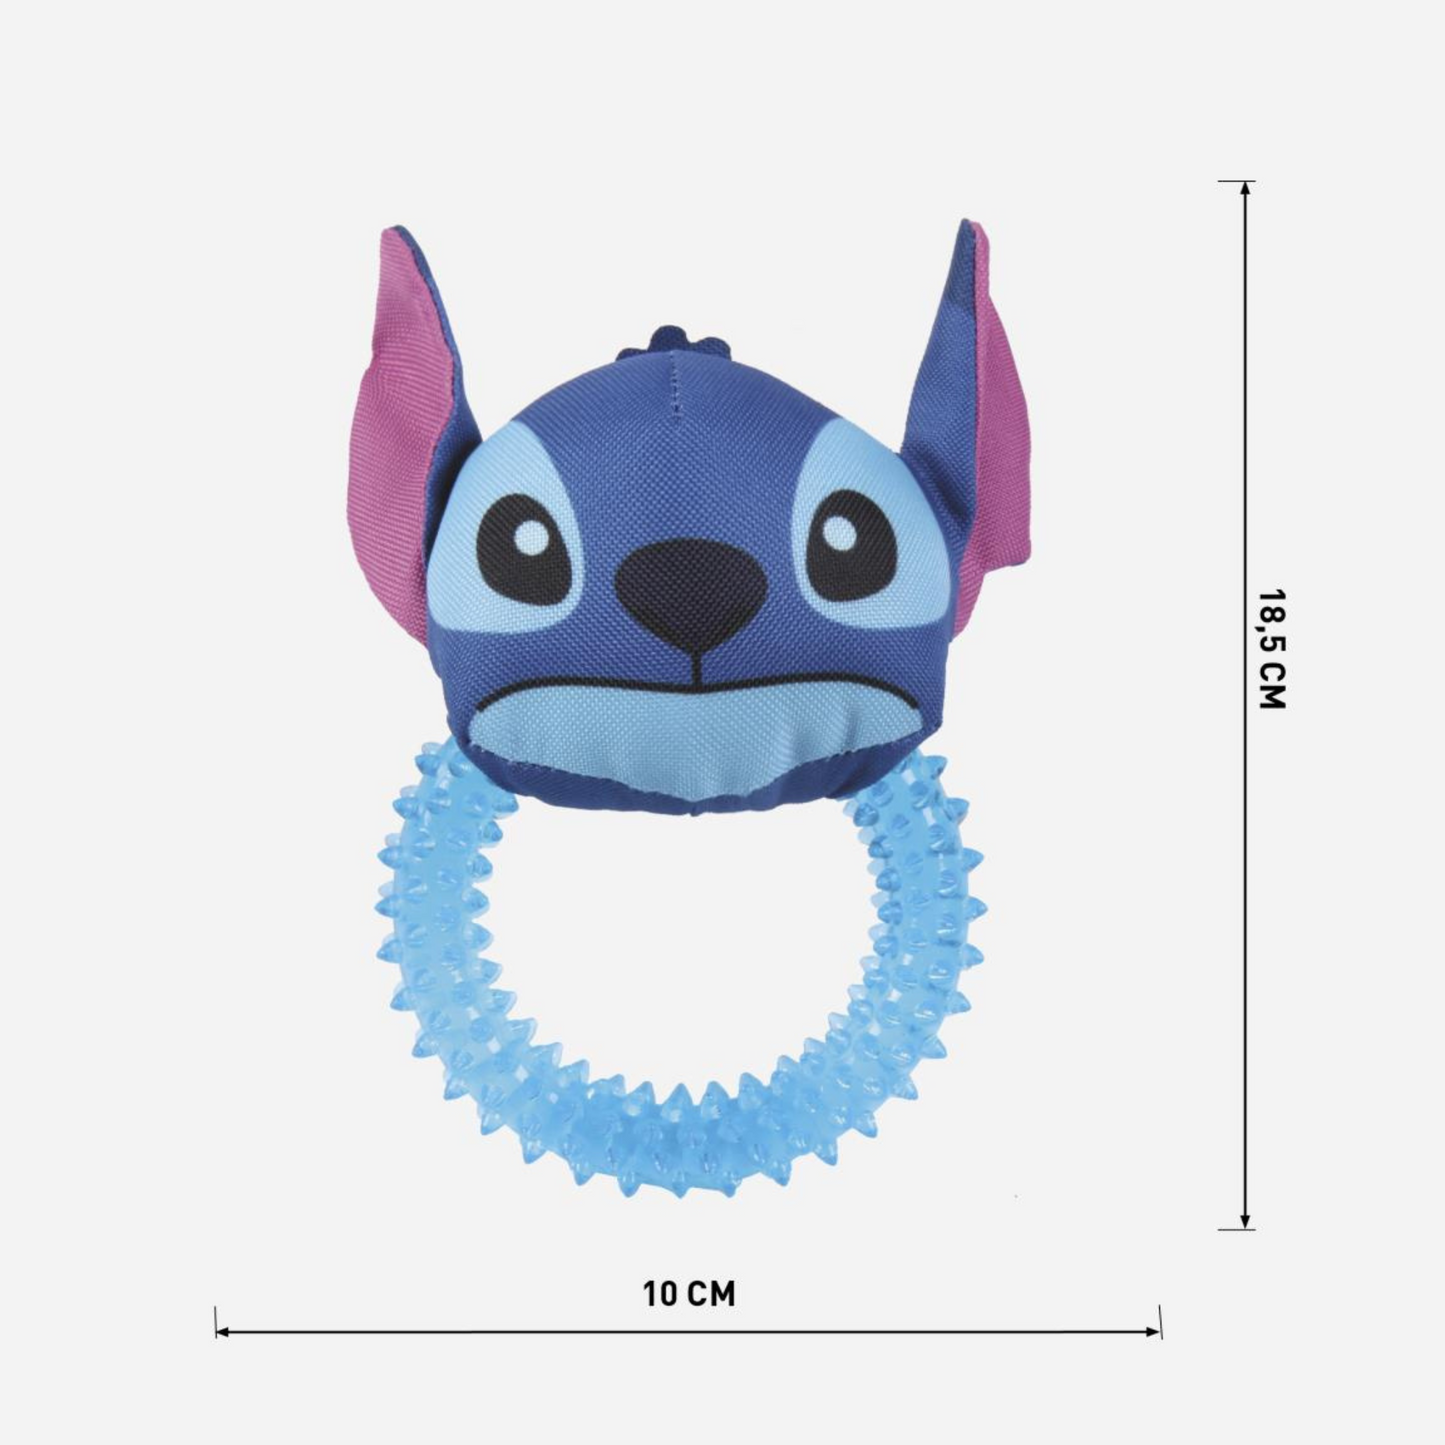 Stitch Dog Toy